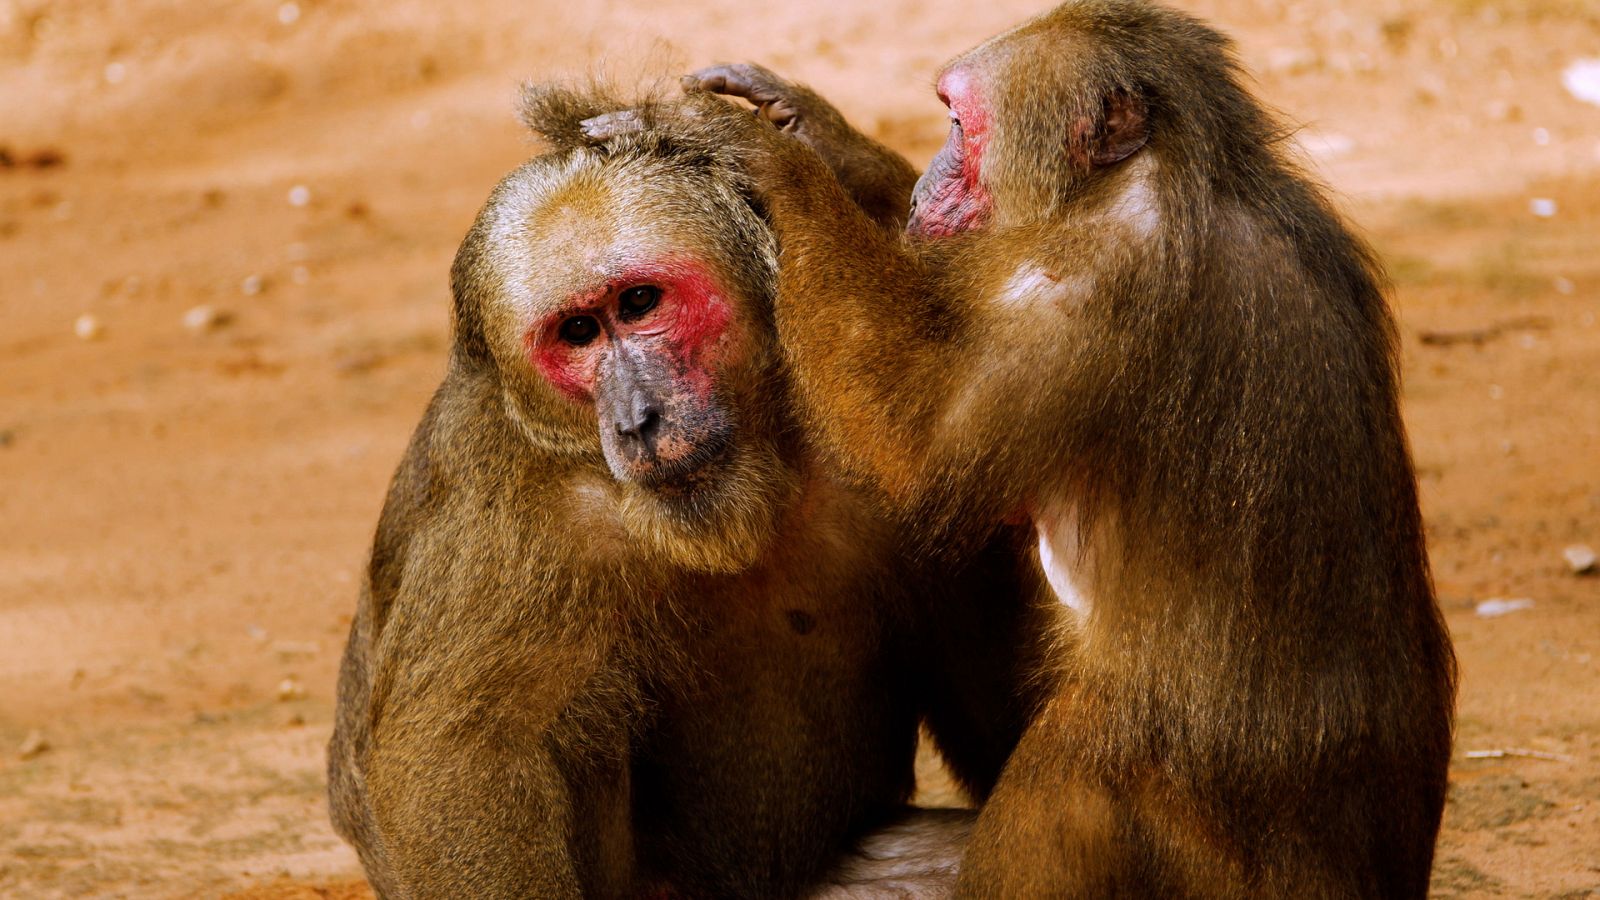 Somos documentales - El reino de los macacos rabones - Documental en RTVE